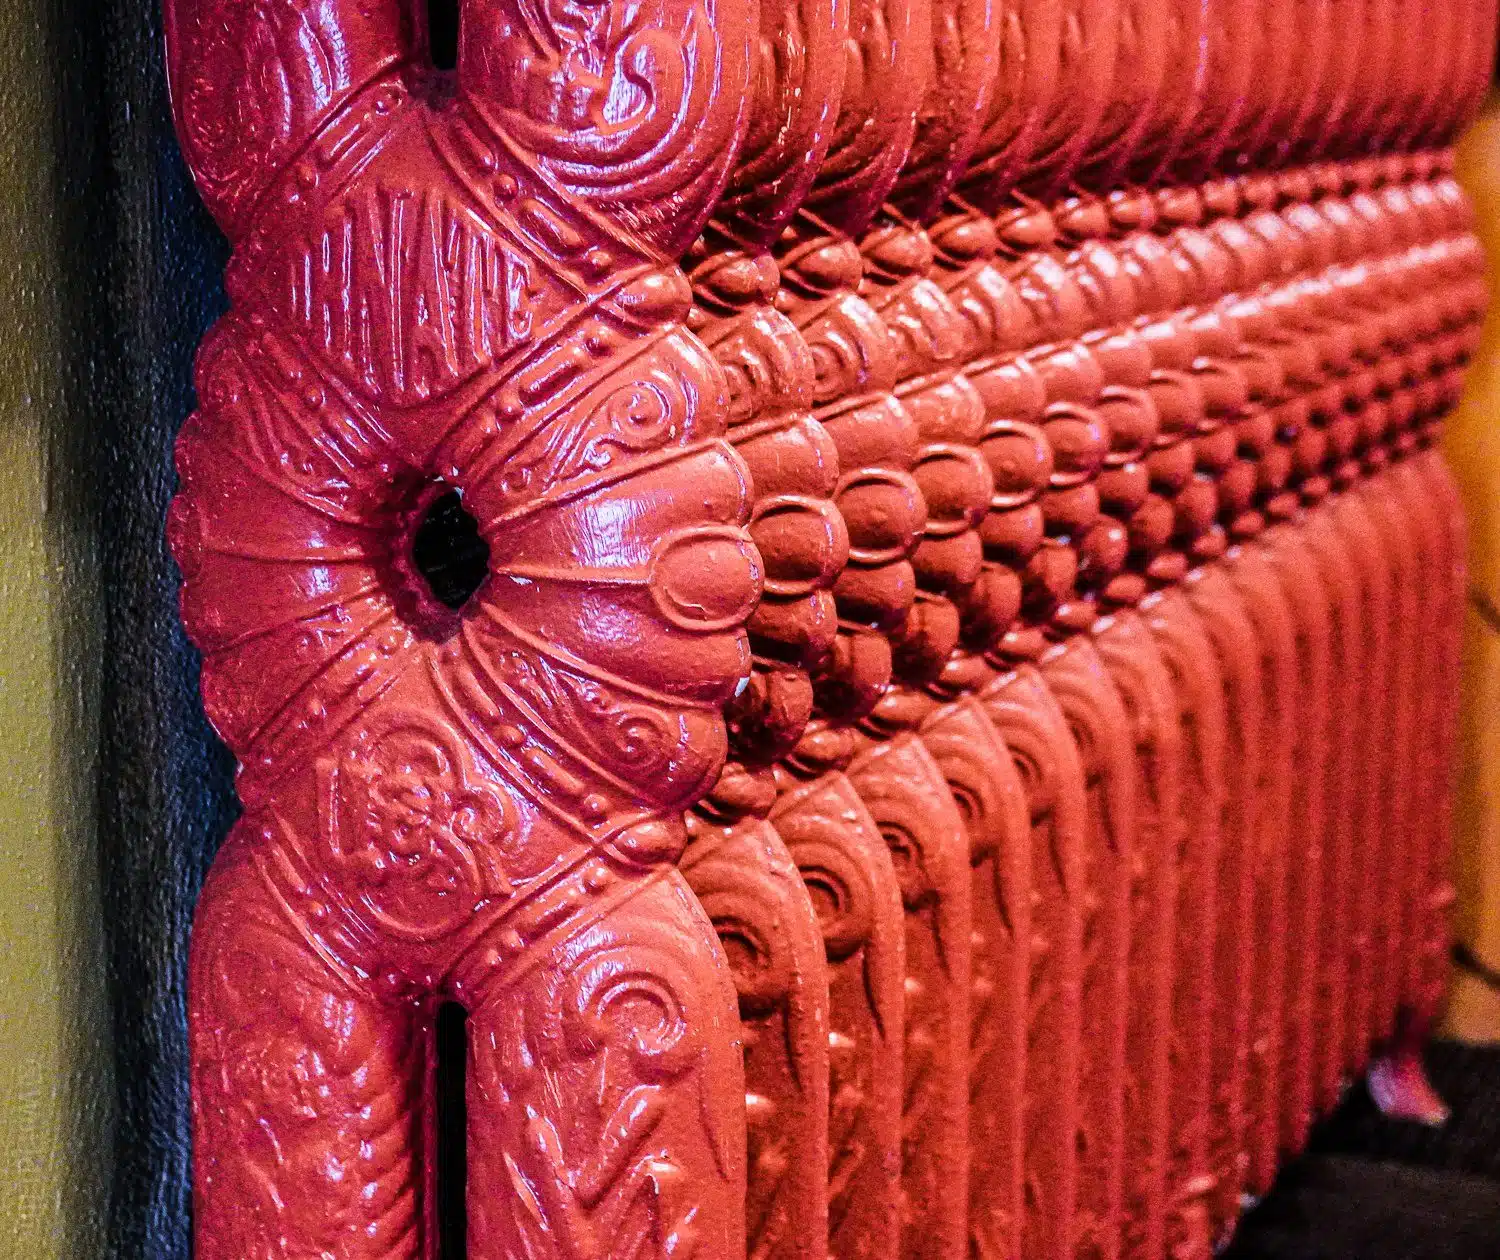 An ornate radiator inside Ligonier Tavern.